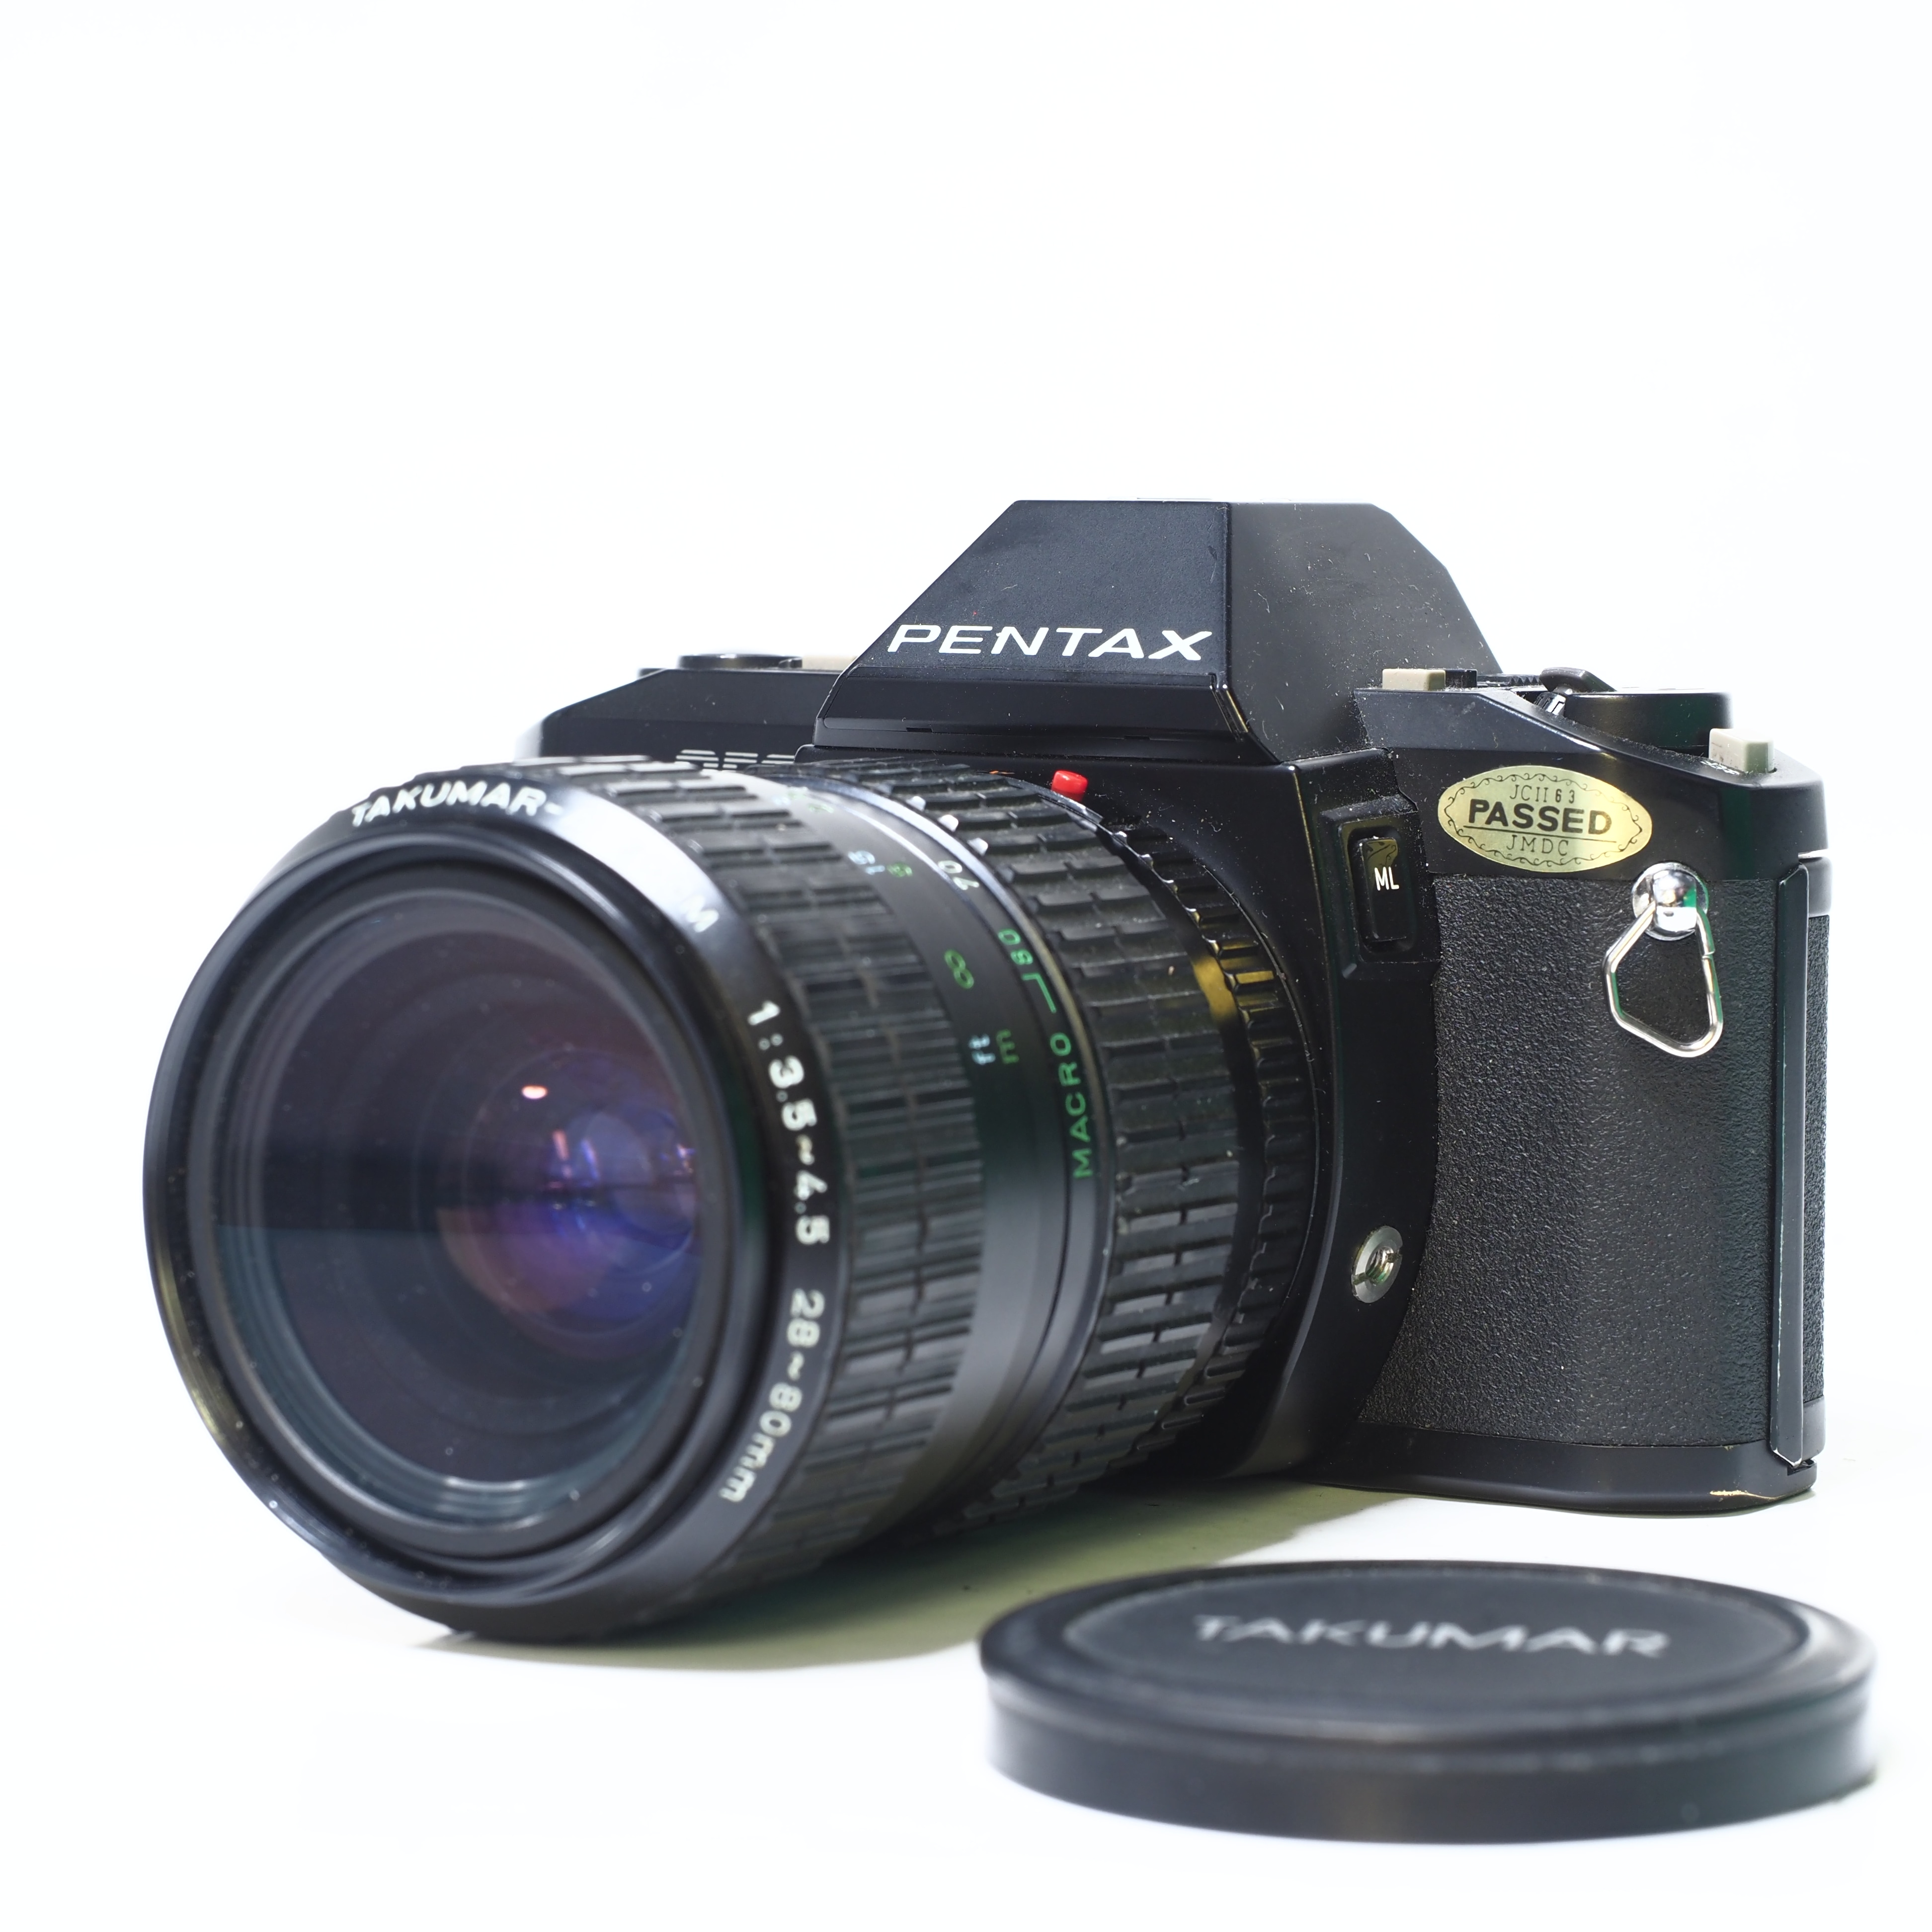 Pentax P50 inkl. Takumar-A Zoom 28-80mm f/3,5-4,5 - Begagnad